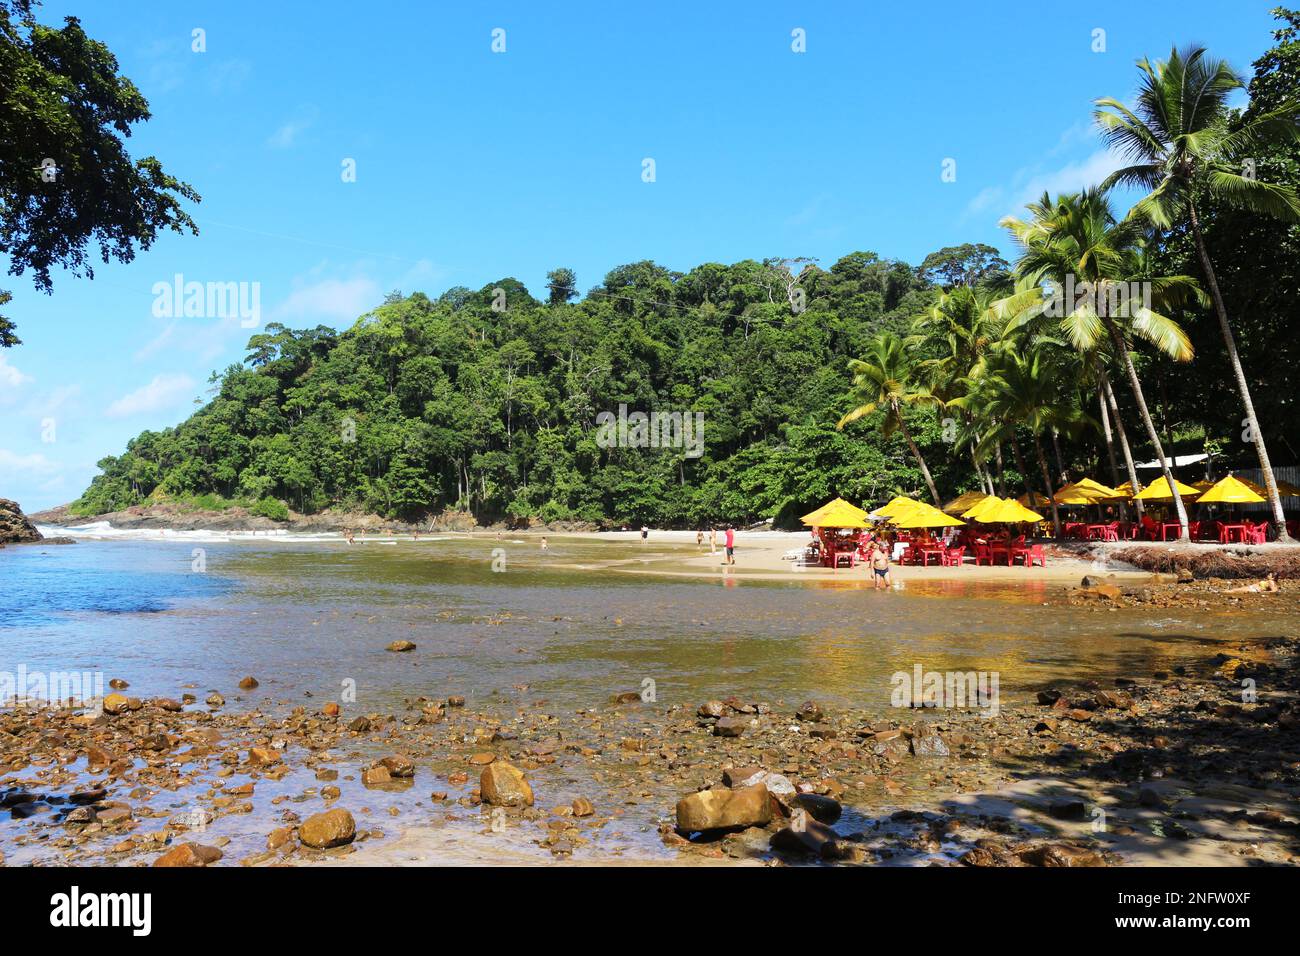 Das Zusammentreffen des Flusses mit dem Meer, das durch den Atlantischen Wald fließt. Engenhoca Beach, Itacaré, Bahia. Ein wunderbarer Ort. Eine einzigartige Schönheit. Stockfoto